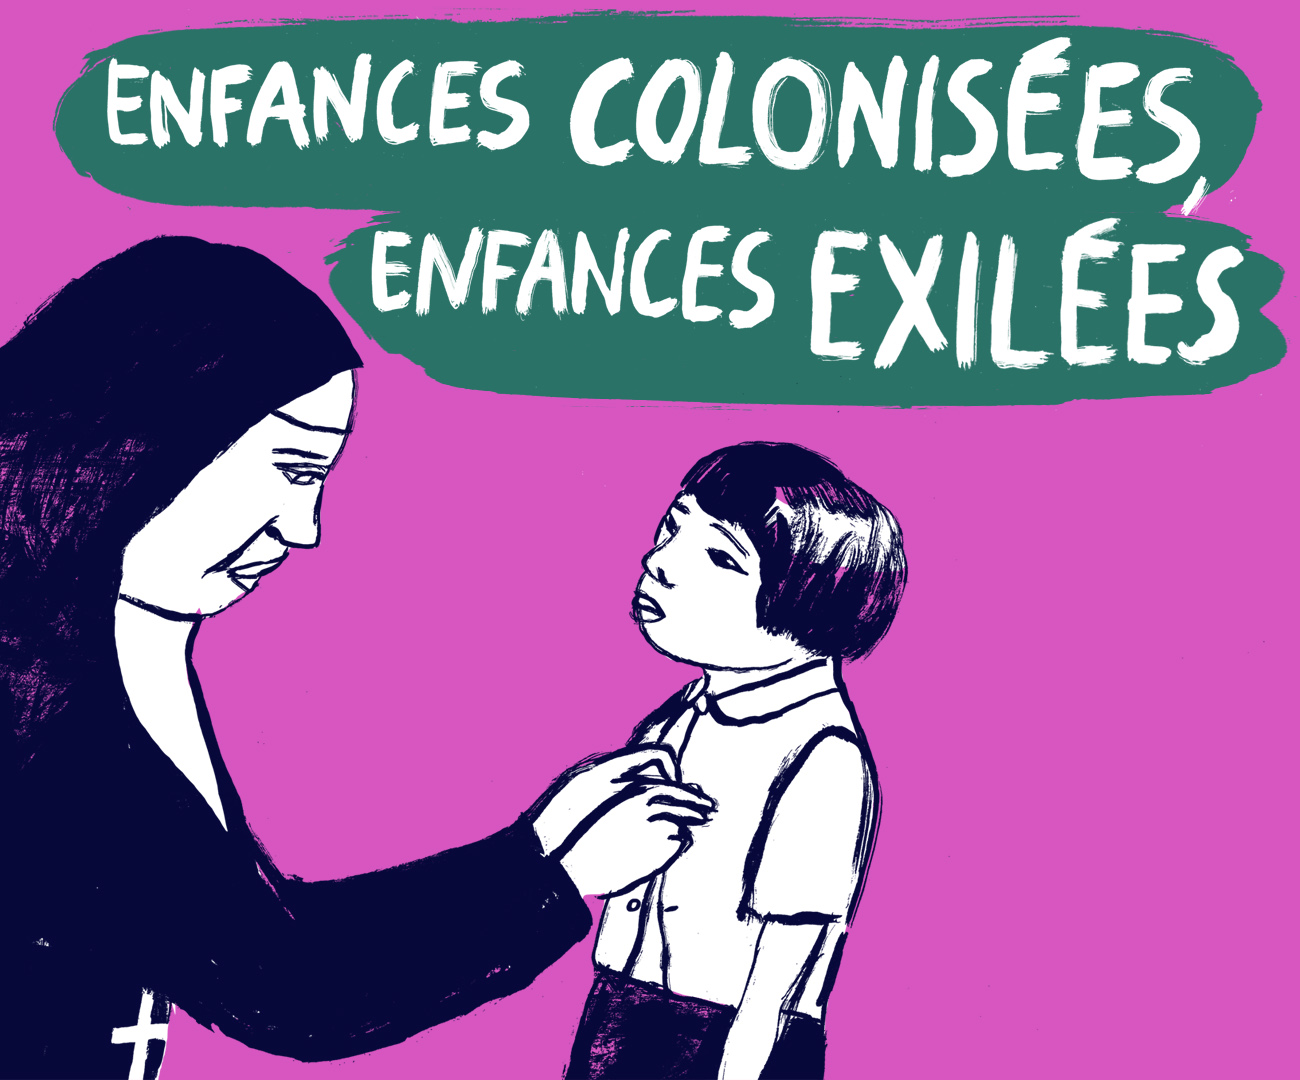 Enfances colonisées, enfances exilées © Benoît Guillaume